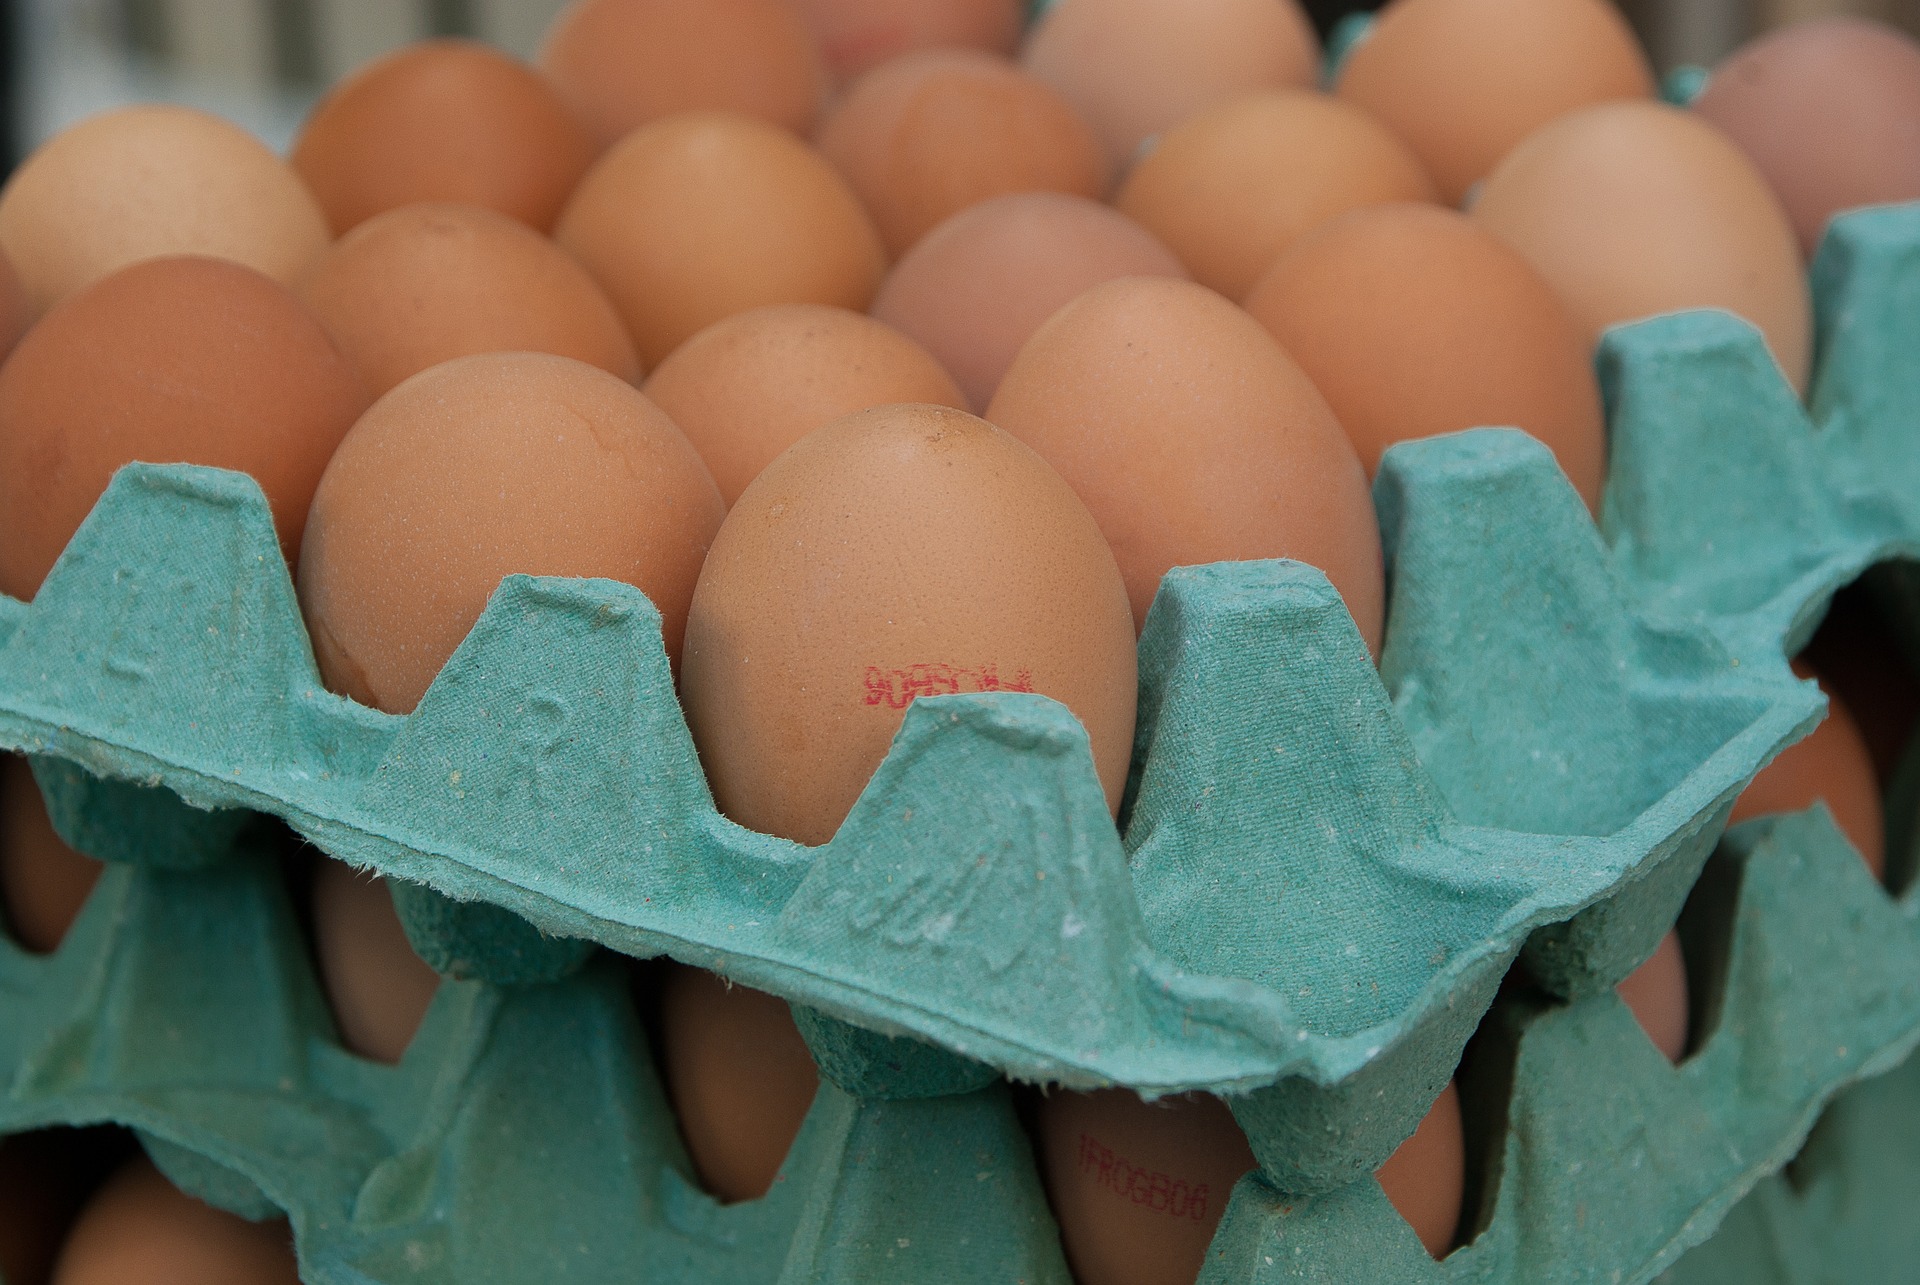 Z rynku wycofano 4,3 mln skażonych jaj